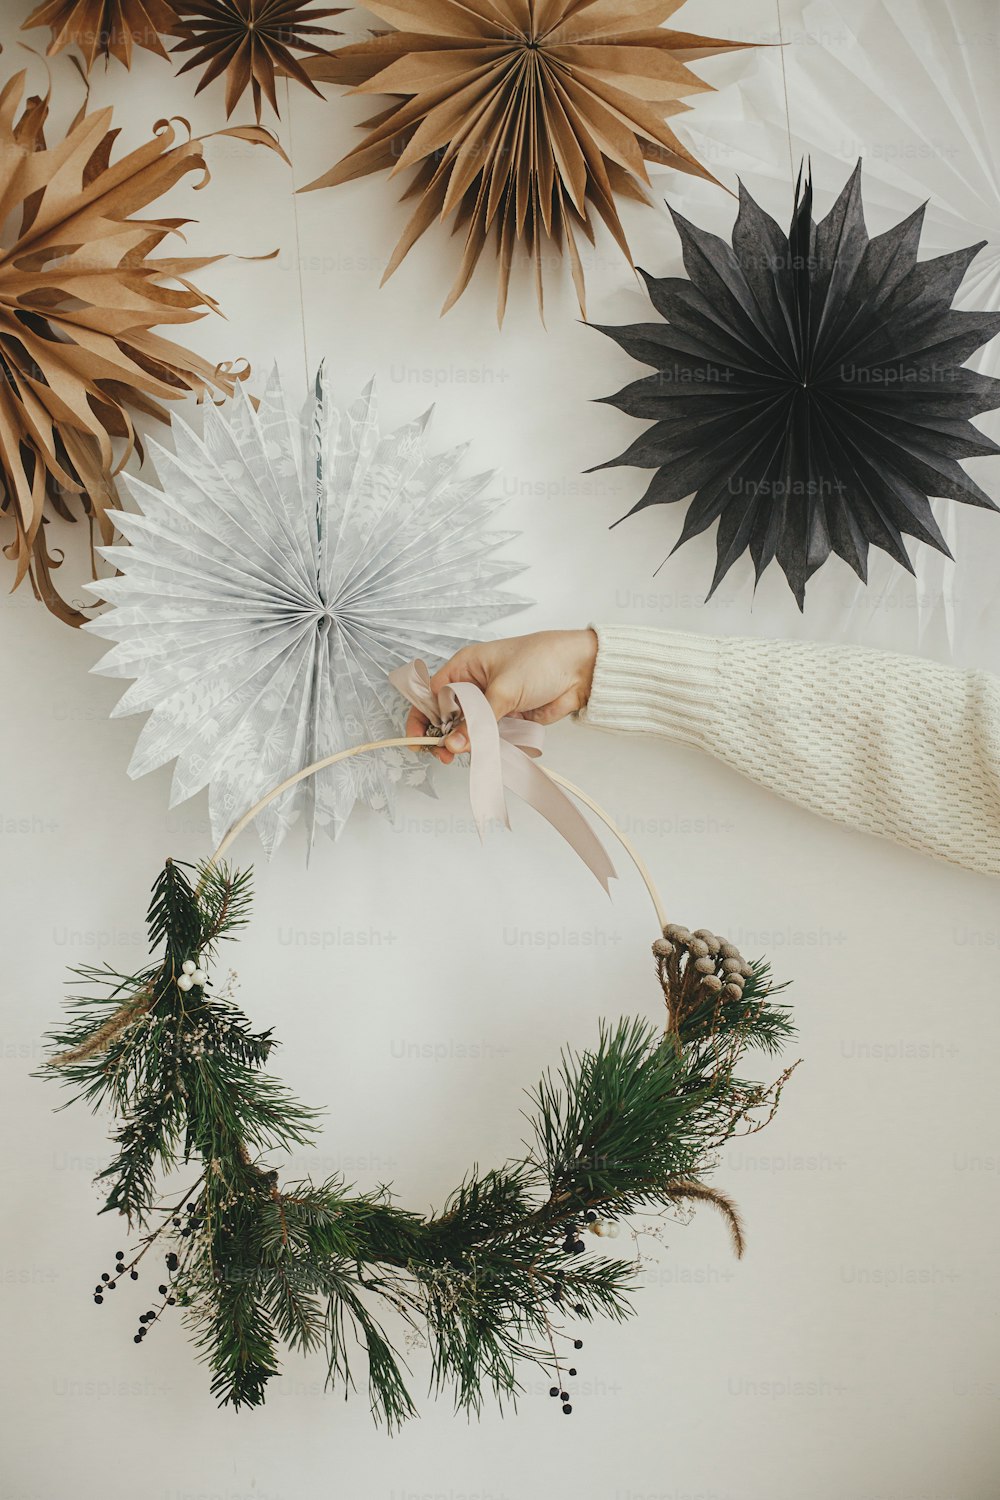 Mano en suéter acogedor sosteniendo una corona navideña moderna sobre fondo de pared blanca con estrellas de papel suecas. ¡Feliz Navidad y Felices Fiestas! Corona boho navideña minimalista en las manos. Tiempo atmosférico